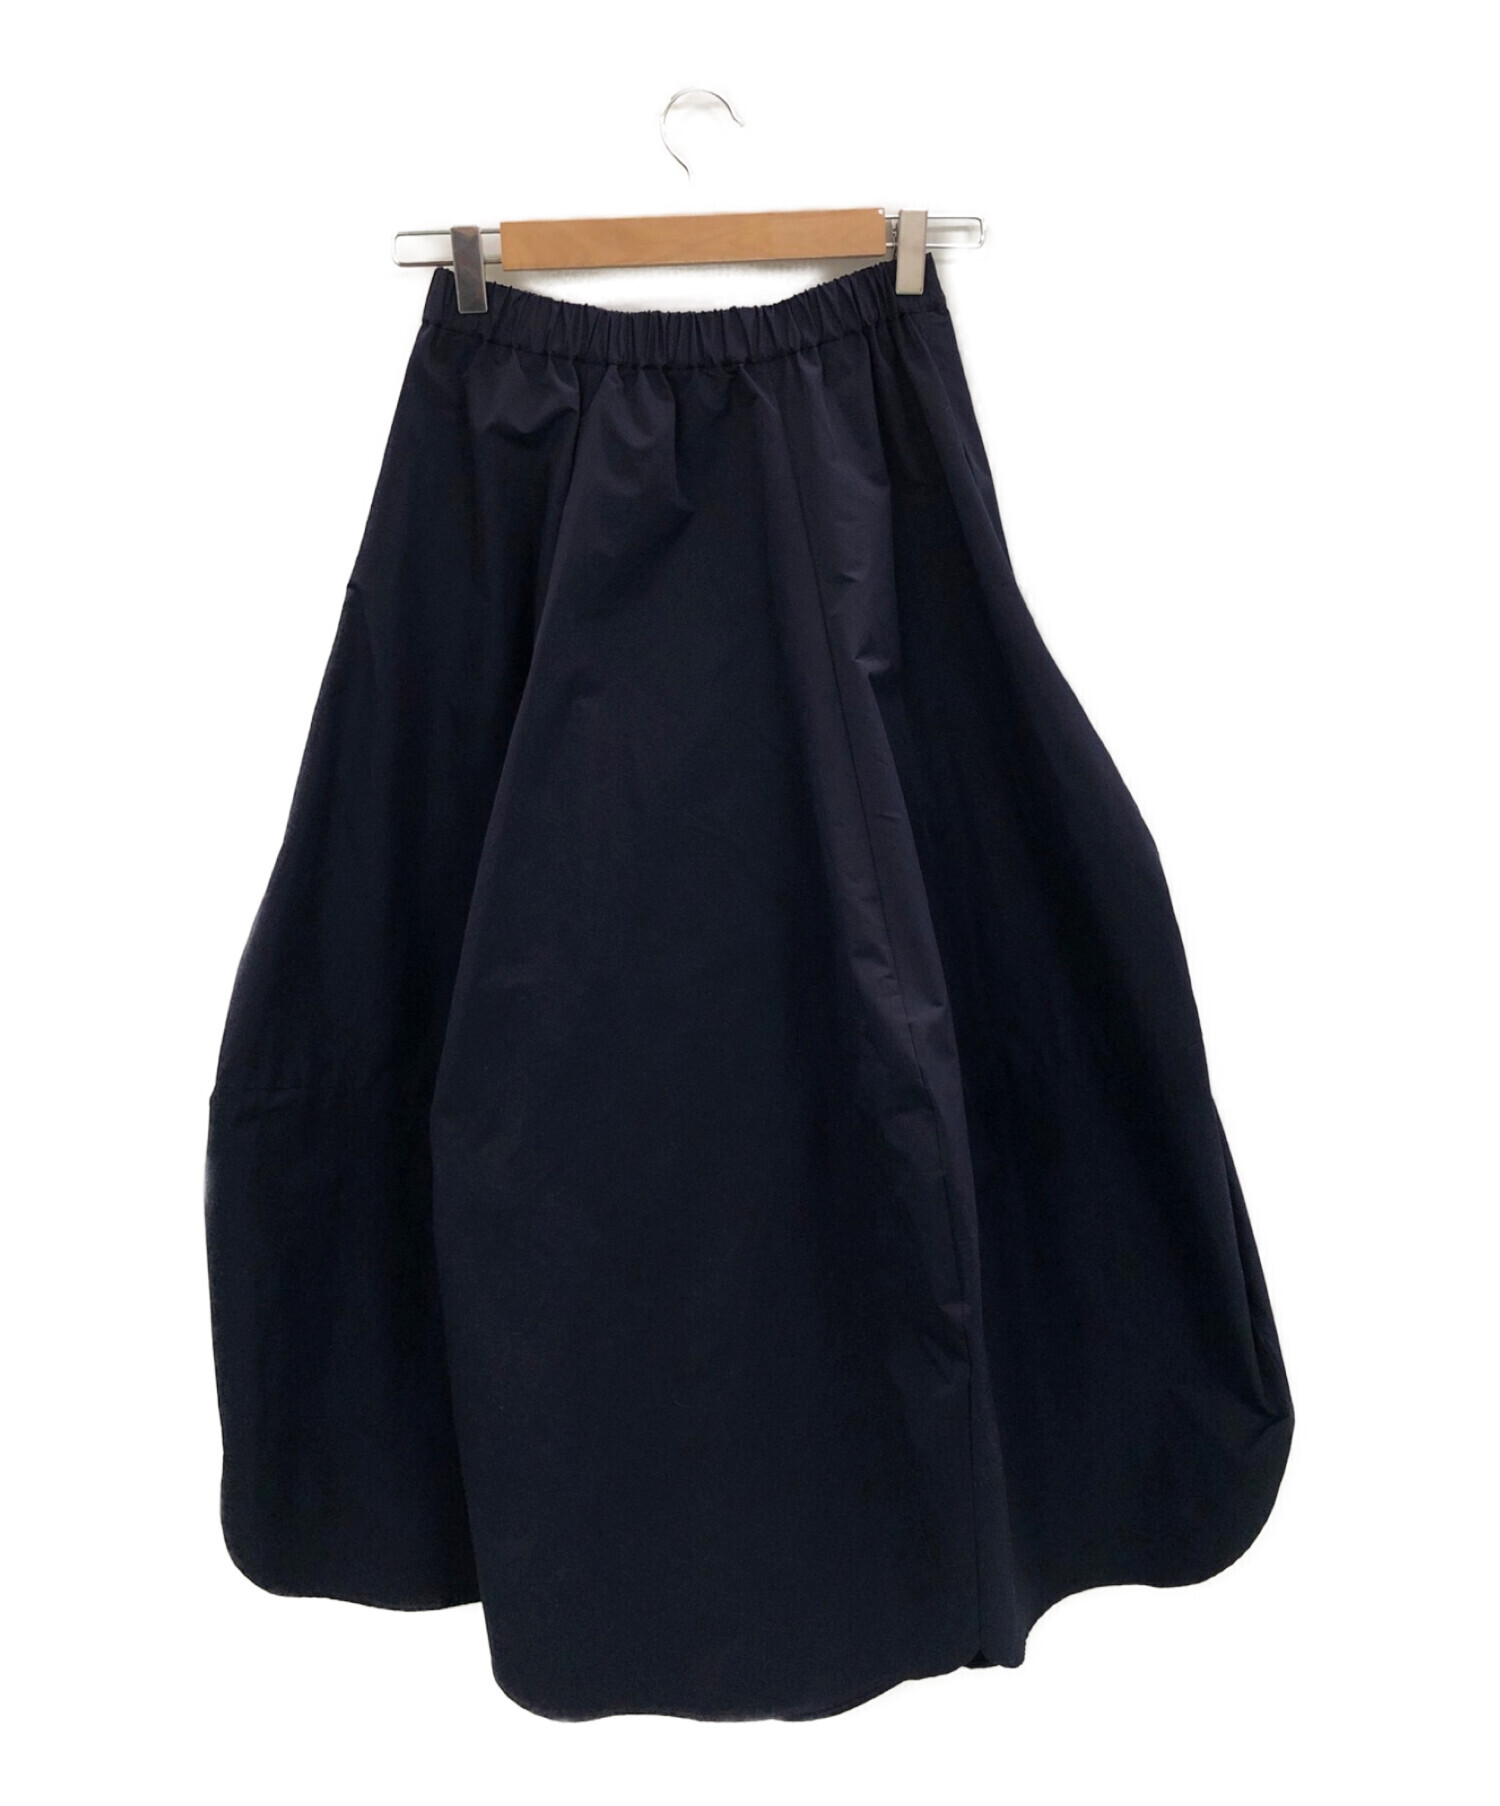 nagonstans (ナゴンスタンス) Peper タフタドレープスカート ネイビー サイズ:SMALL